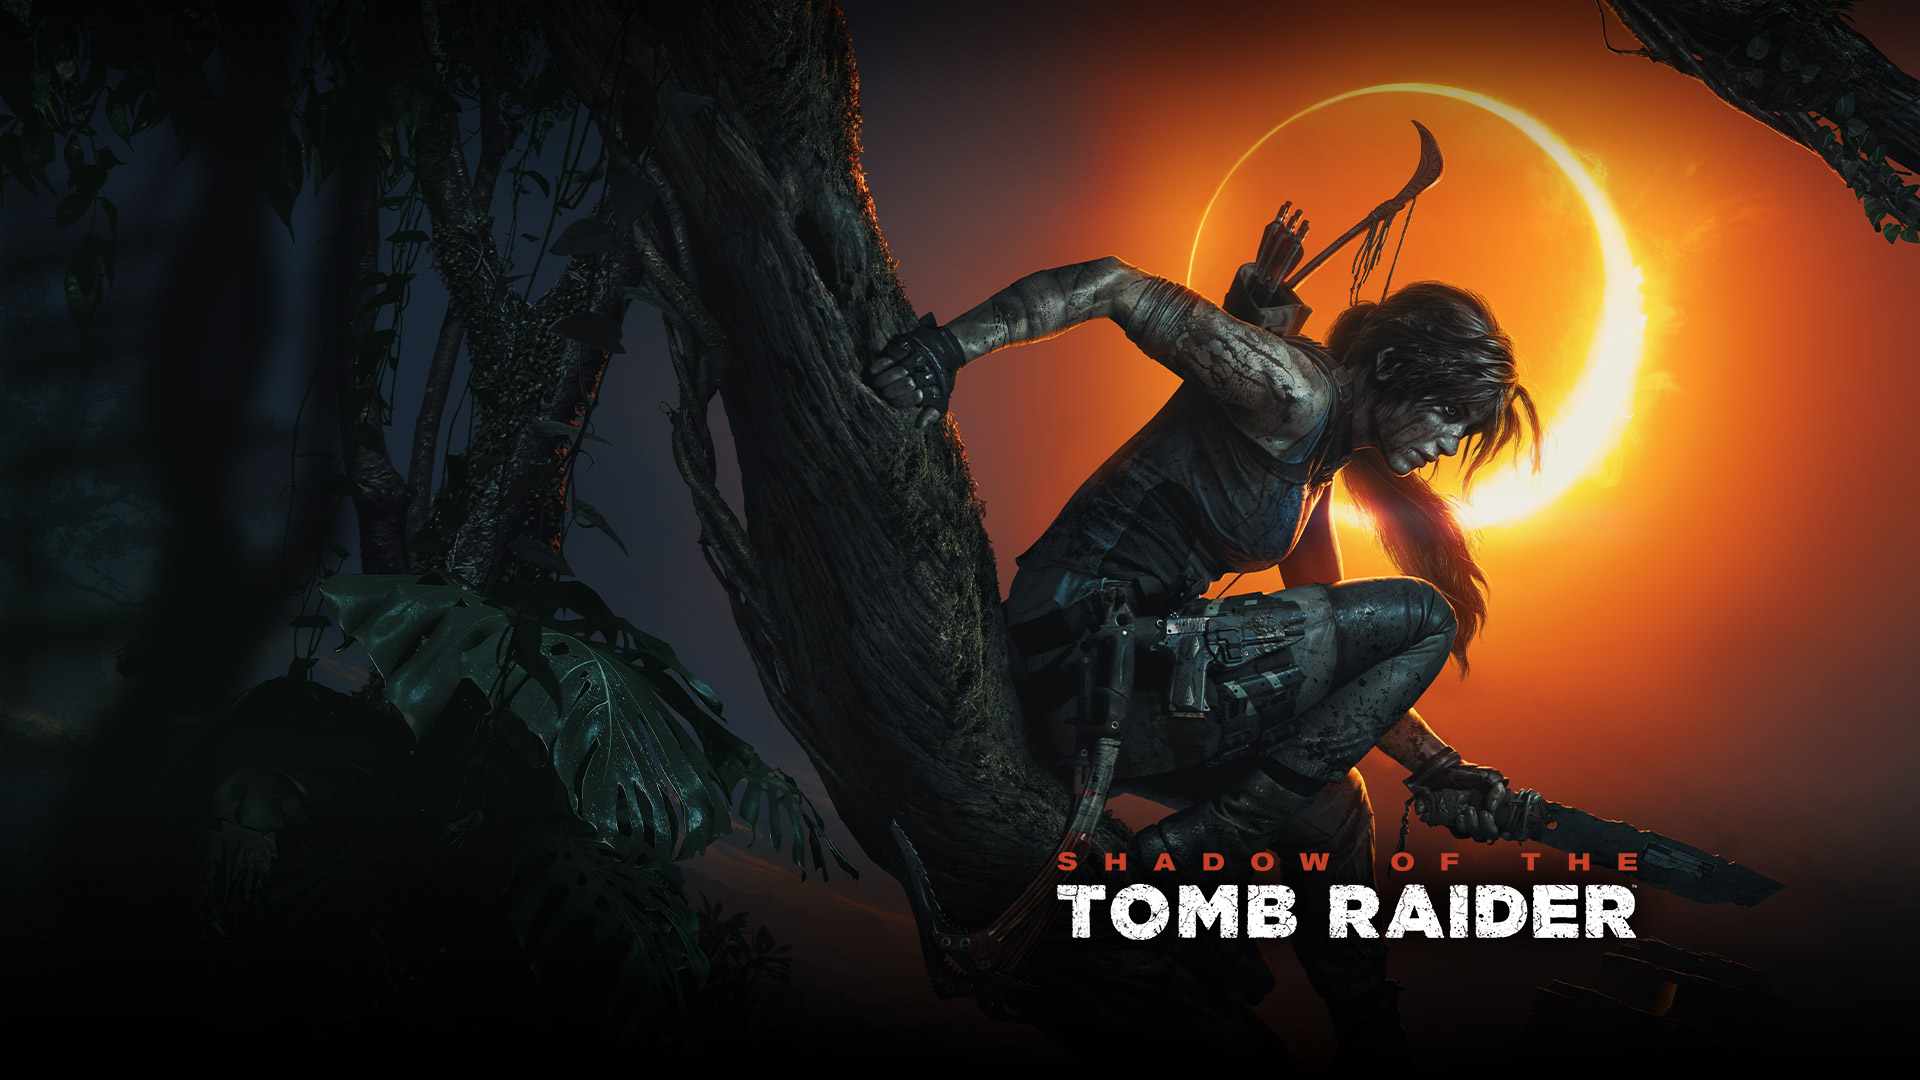 Shadow of the Tomb Raider, 배경에서 일식이 일어나는 가운데 라라 크로프트가 칼을 들고 나뭇가지 위에 앉아 있습니다.